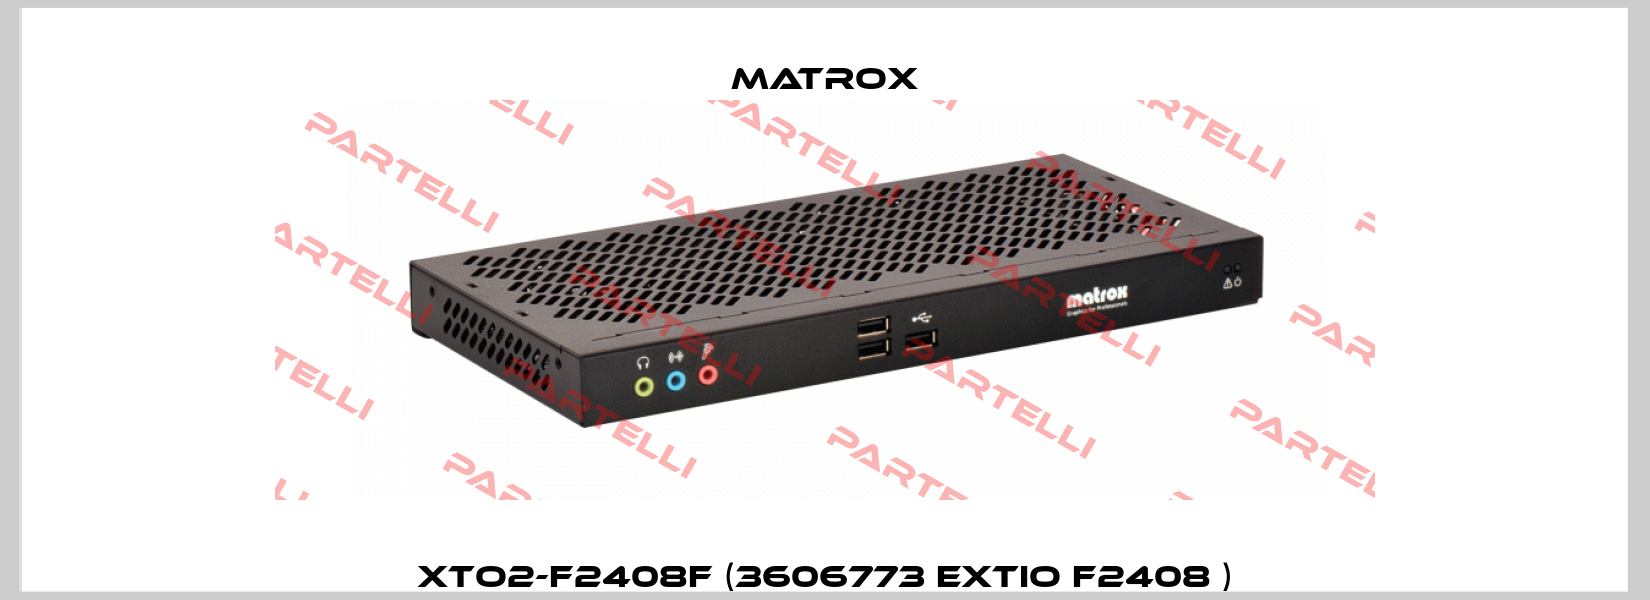 XTO2-F2408F (3606773 Extio F2408 ) Matrox